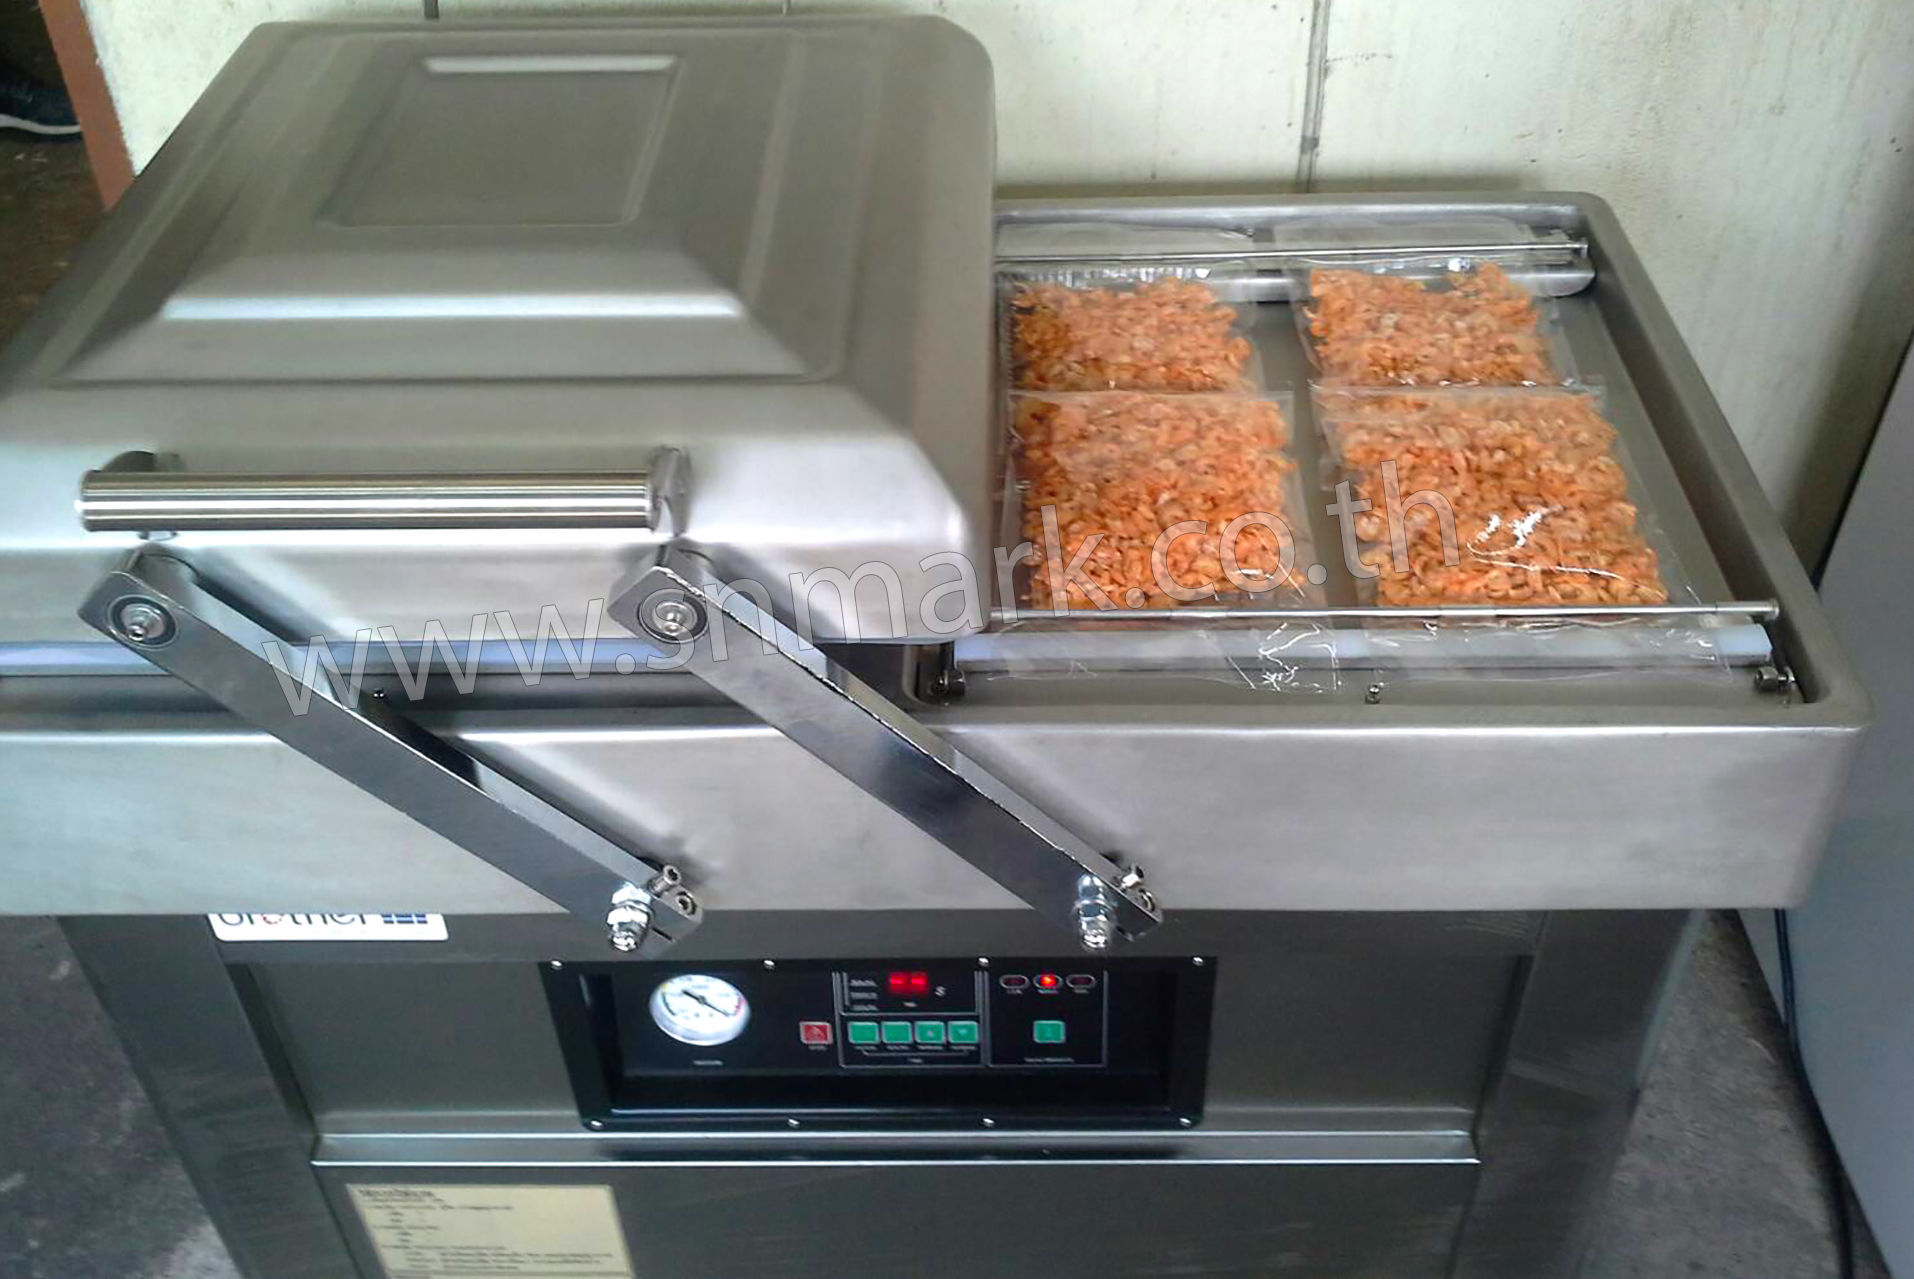 เครื่องซีลสูญญากาศ (vacuum packing machine) รุ่น DZ-400/2SB แพ็คสูญญากาศอาหาร เนื้อสตว์ ผลไม้ และอื่นๆ